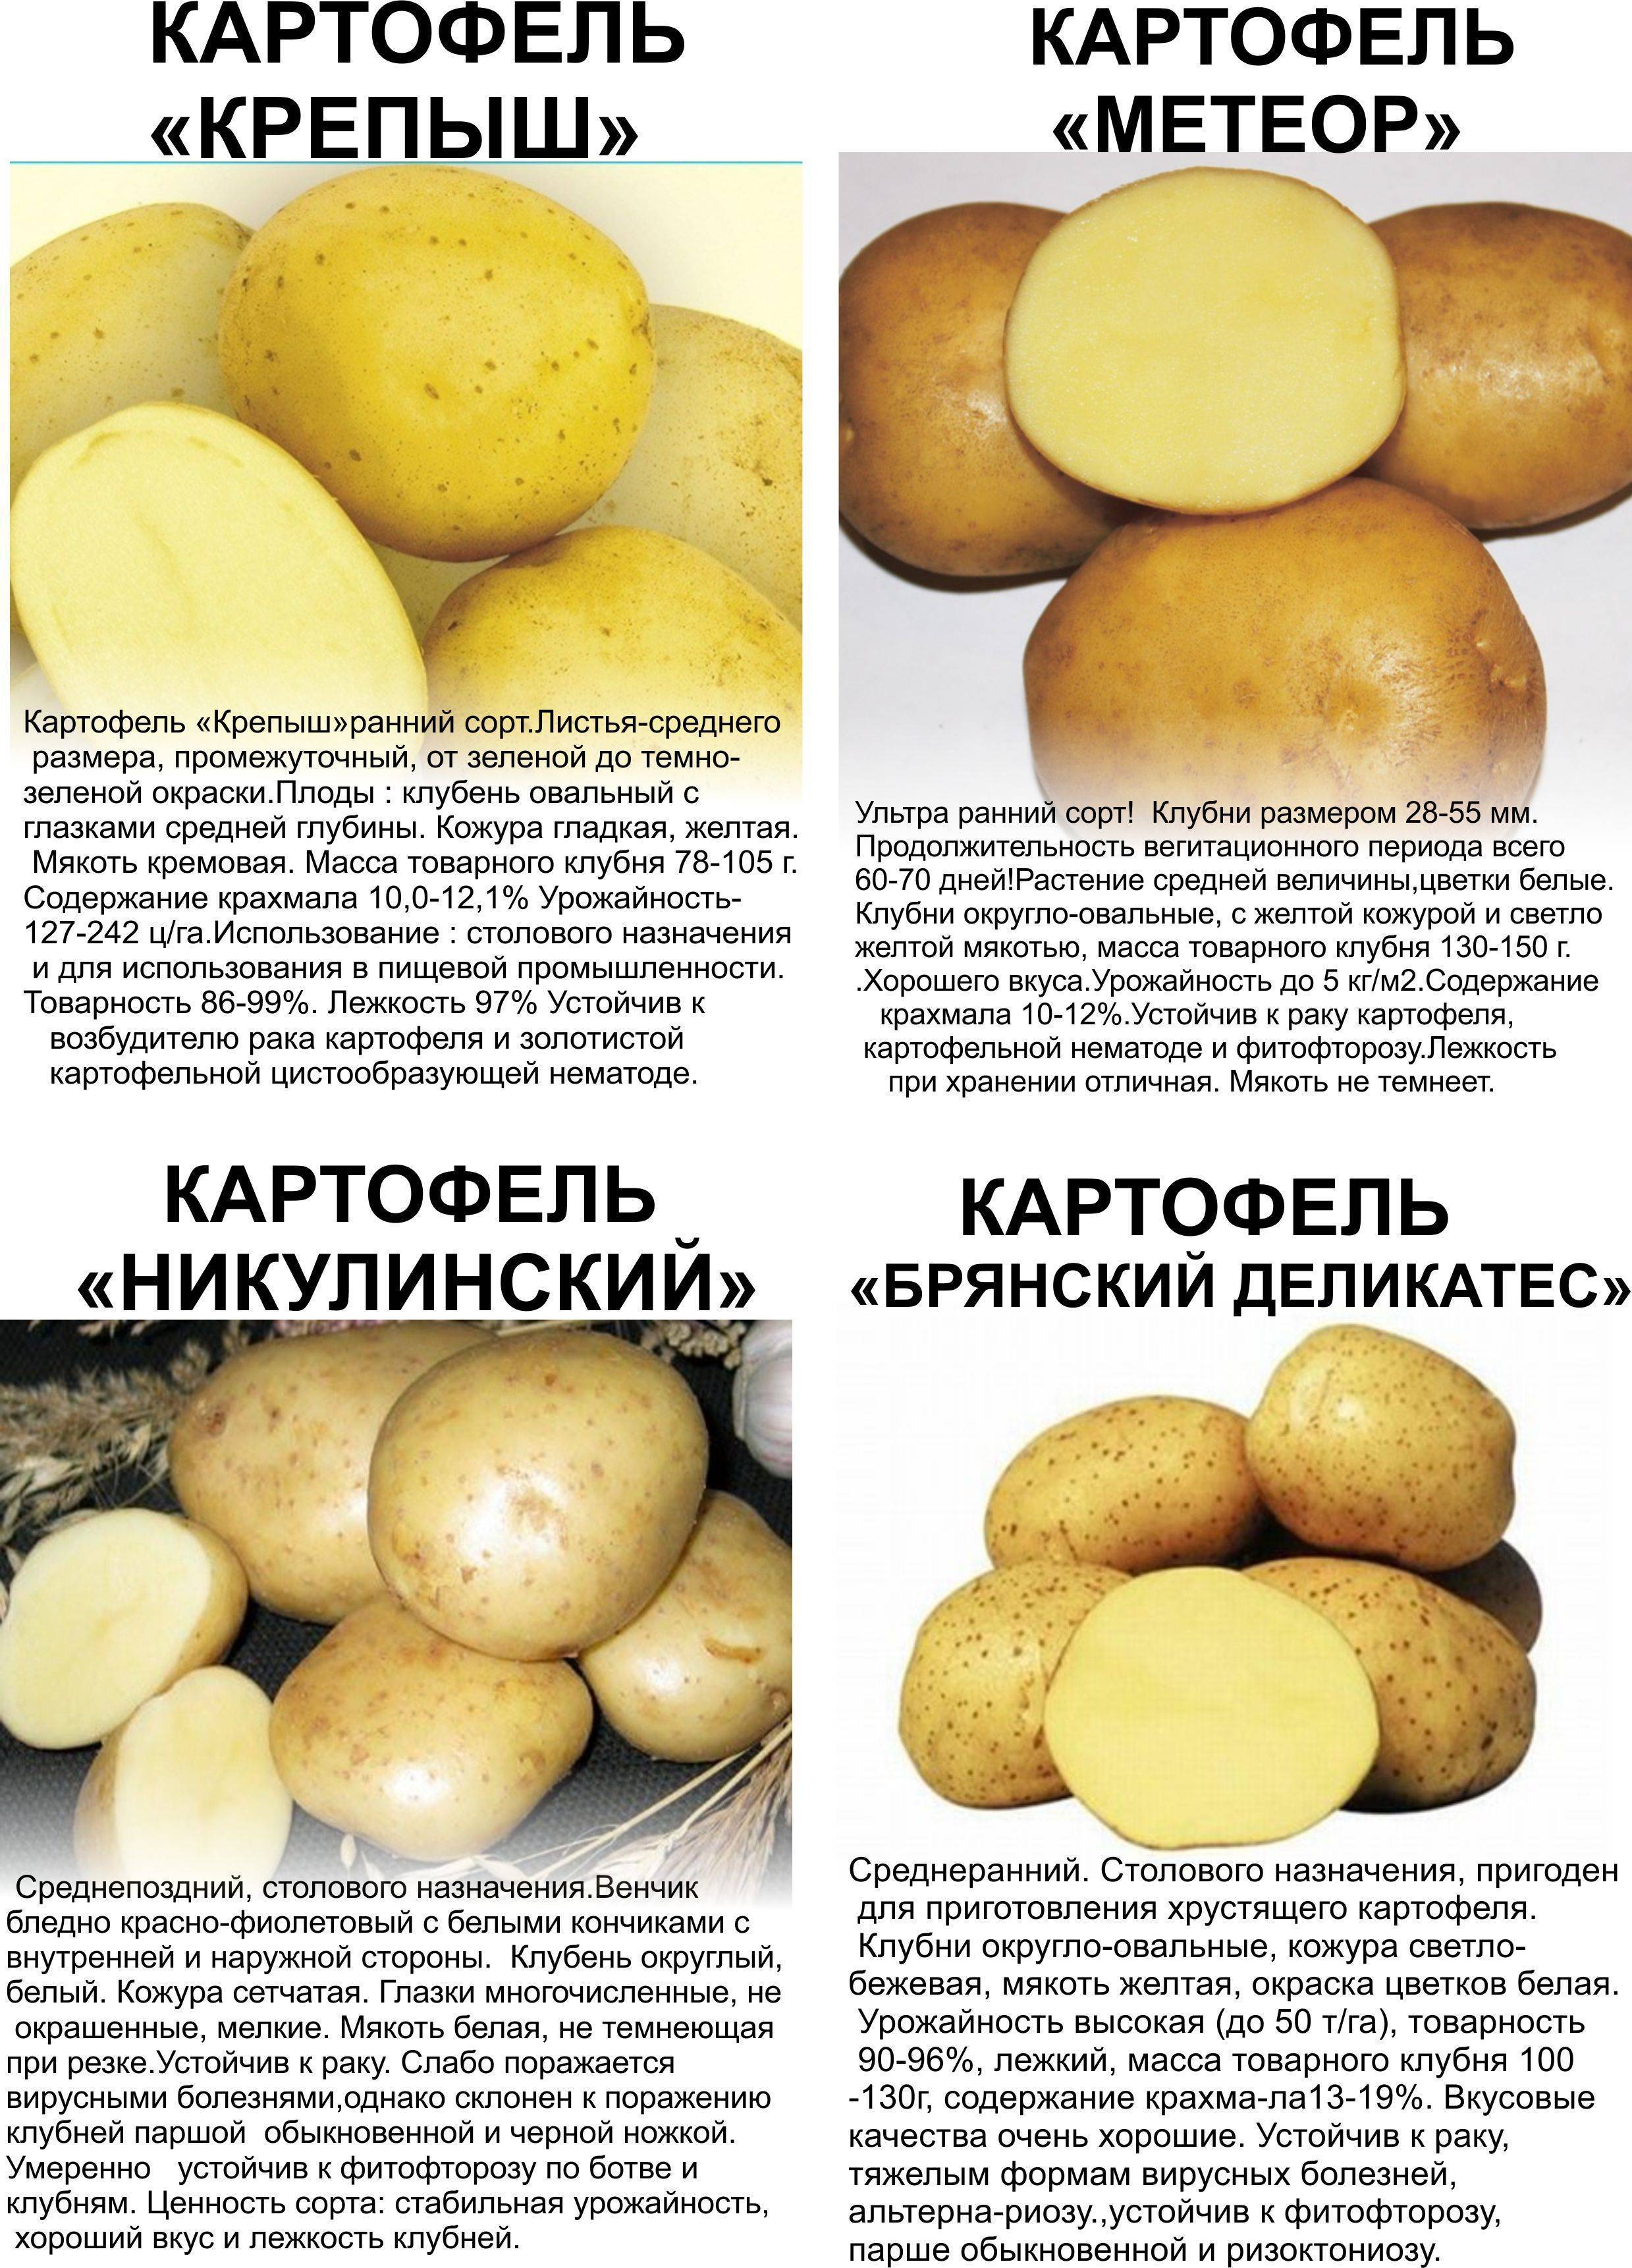 Картофель вектор: описание сорта, фото, отзывы